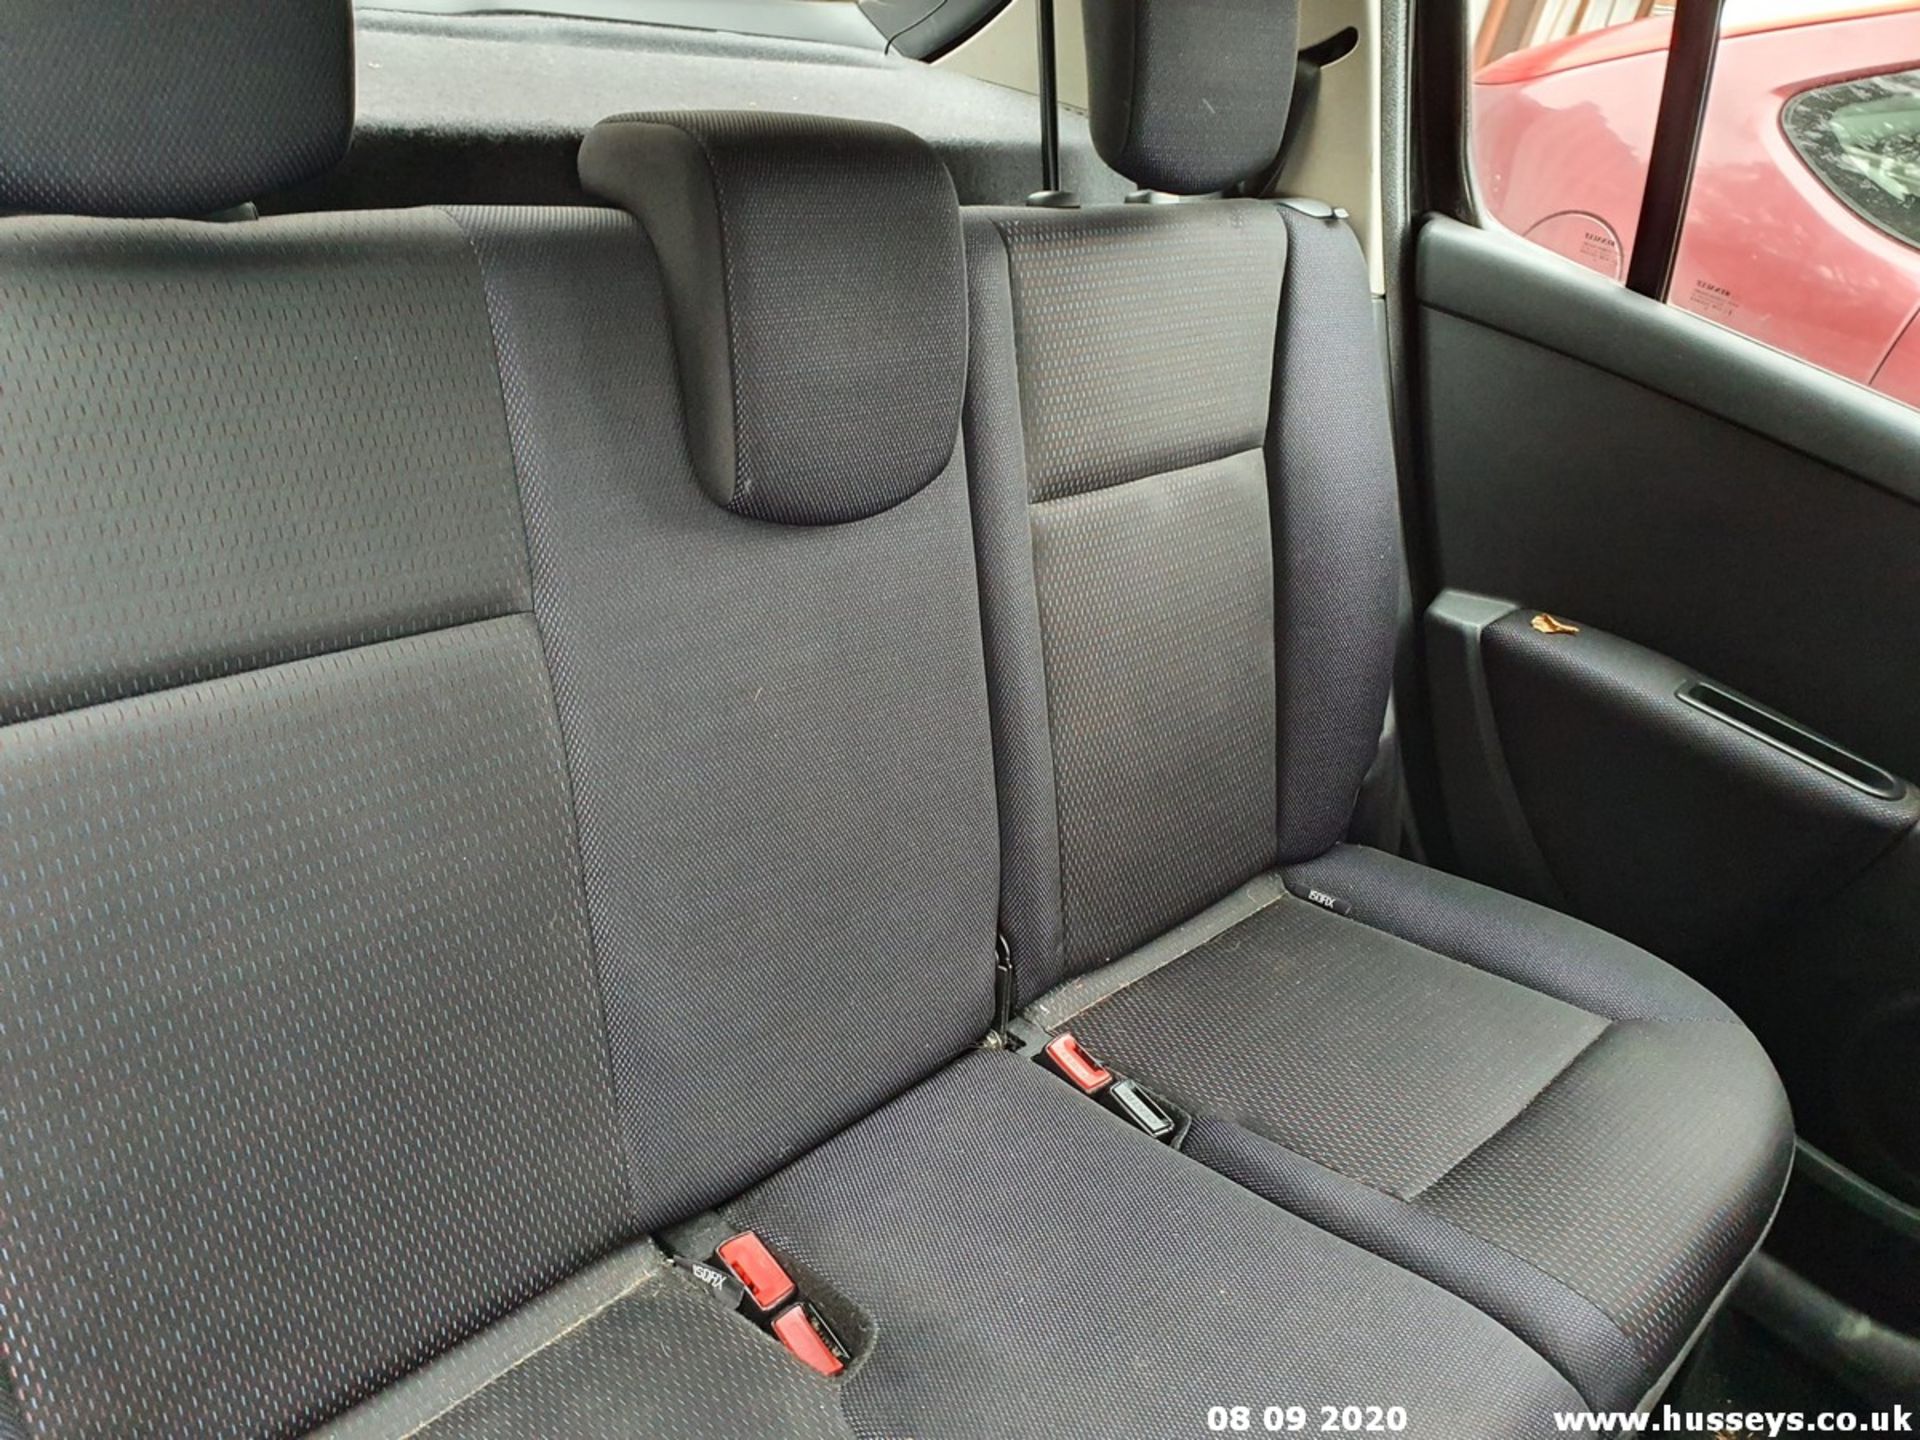 07/07 RENAULT CLIO DYNAMIQUE - 1390cc 5dr Hatchback (Black, 100k) - Image 3 of 9